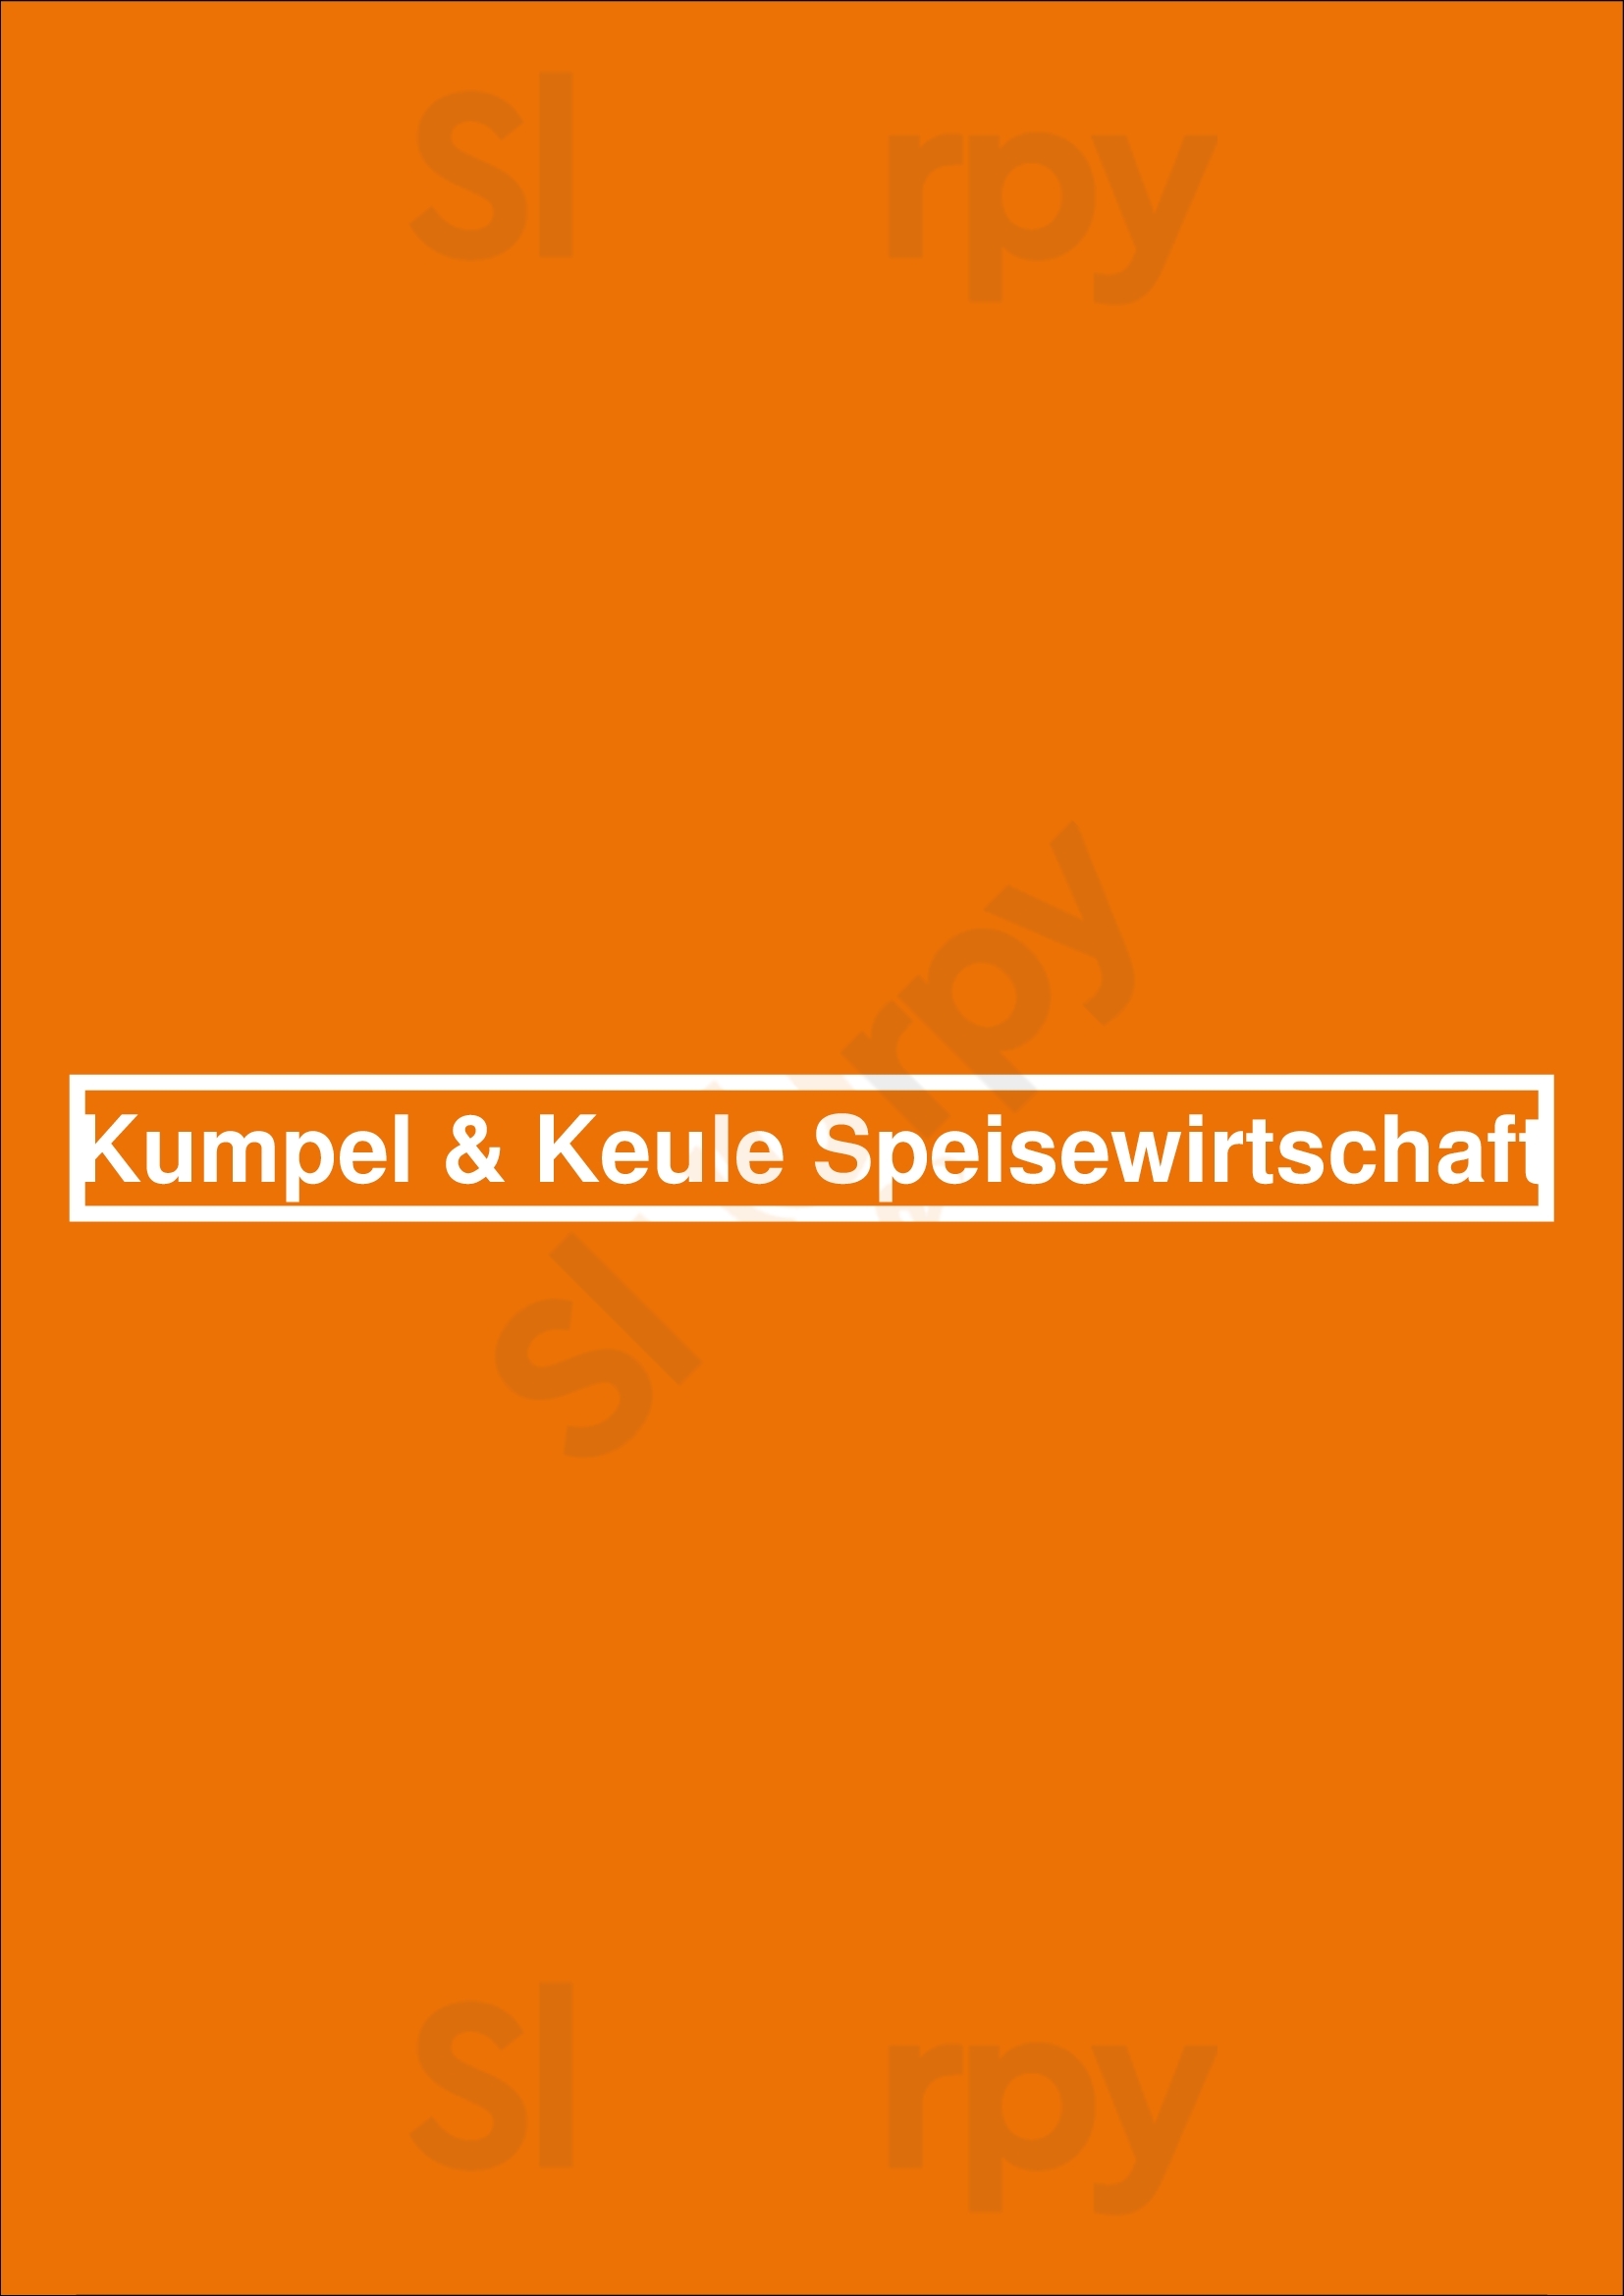 Kumpel & Keule Speisewirtschaft Berlin Menu - 1